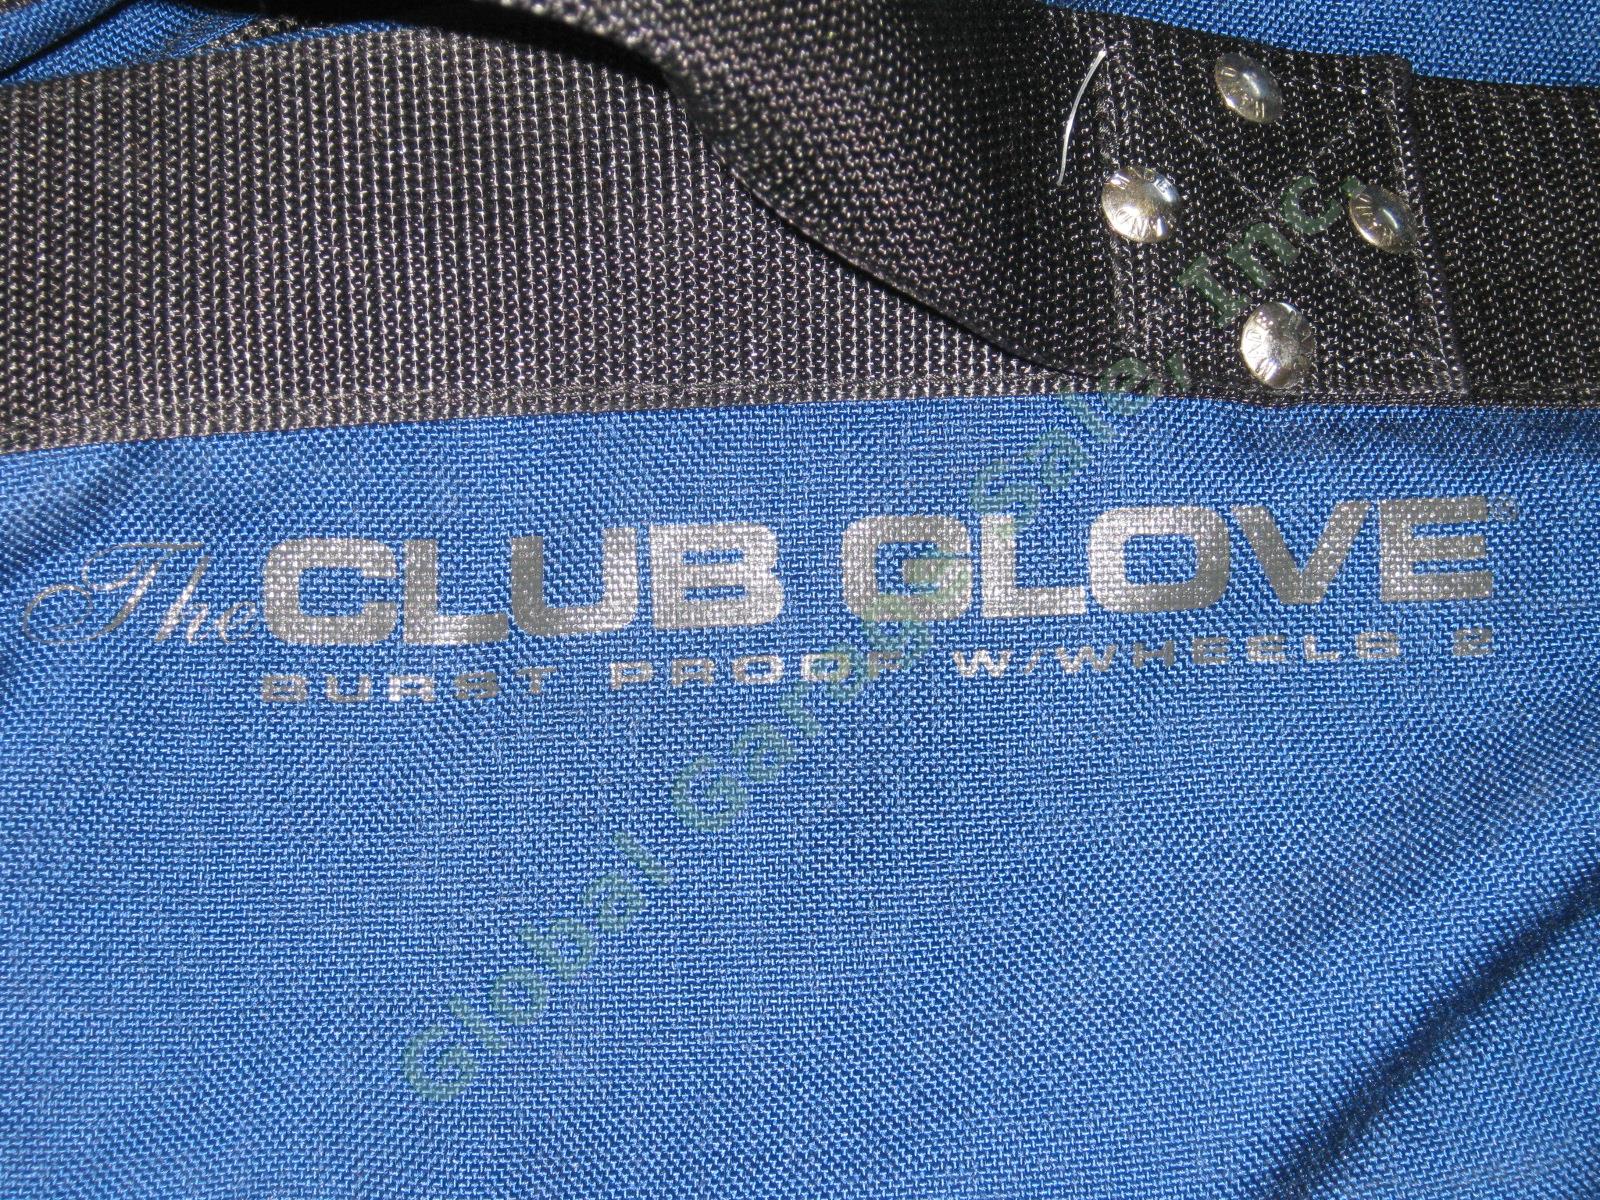 Navy Club Glove Burst Proof Travel Golf Club Bag With Wheels 2 II Free Stiff Arm 4